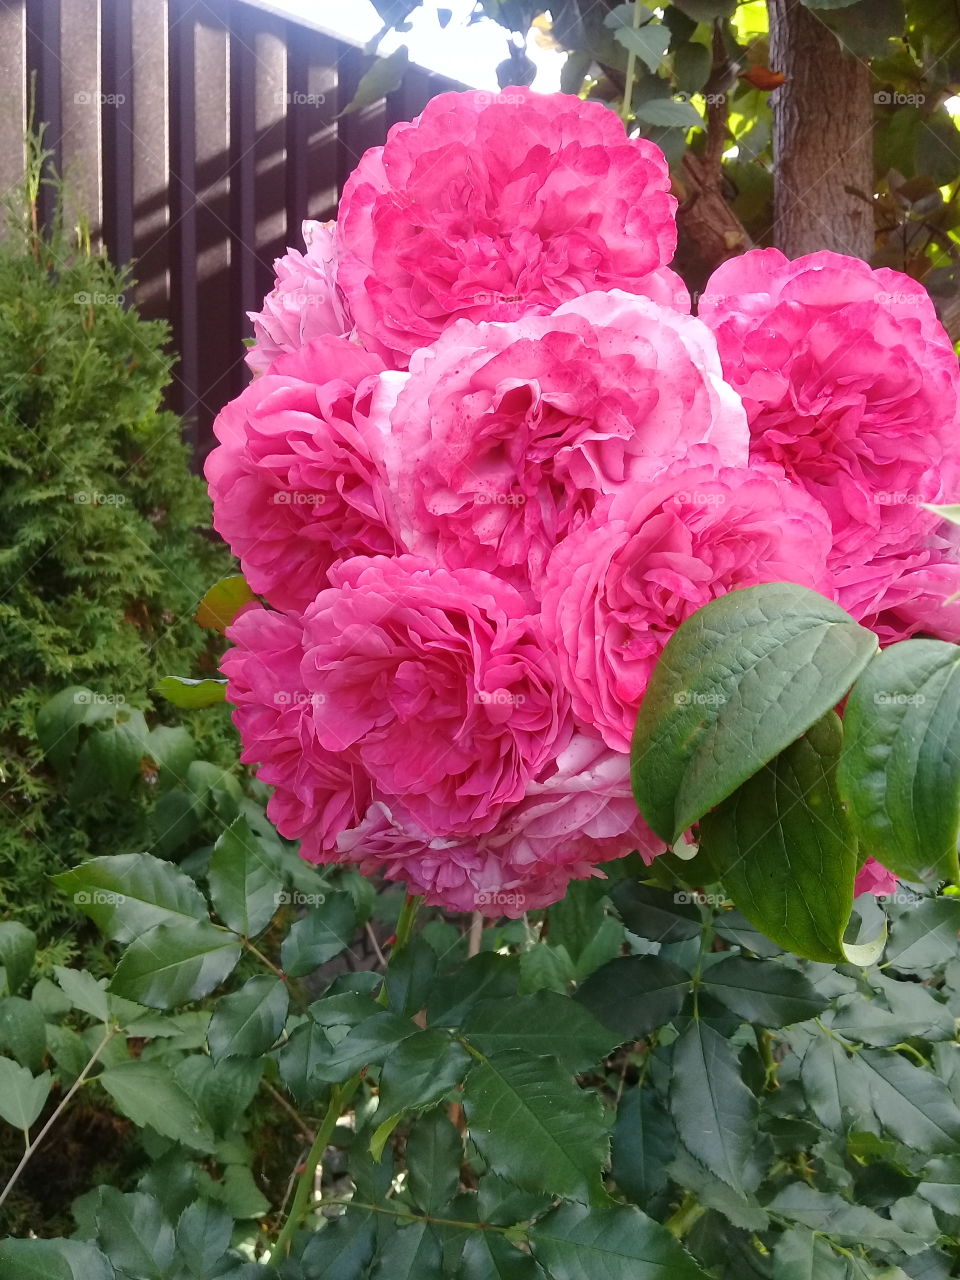 My roses in autumn